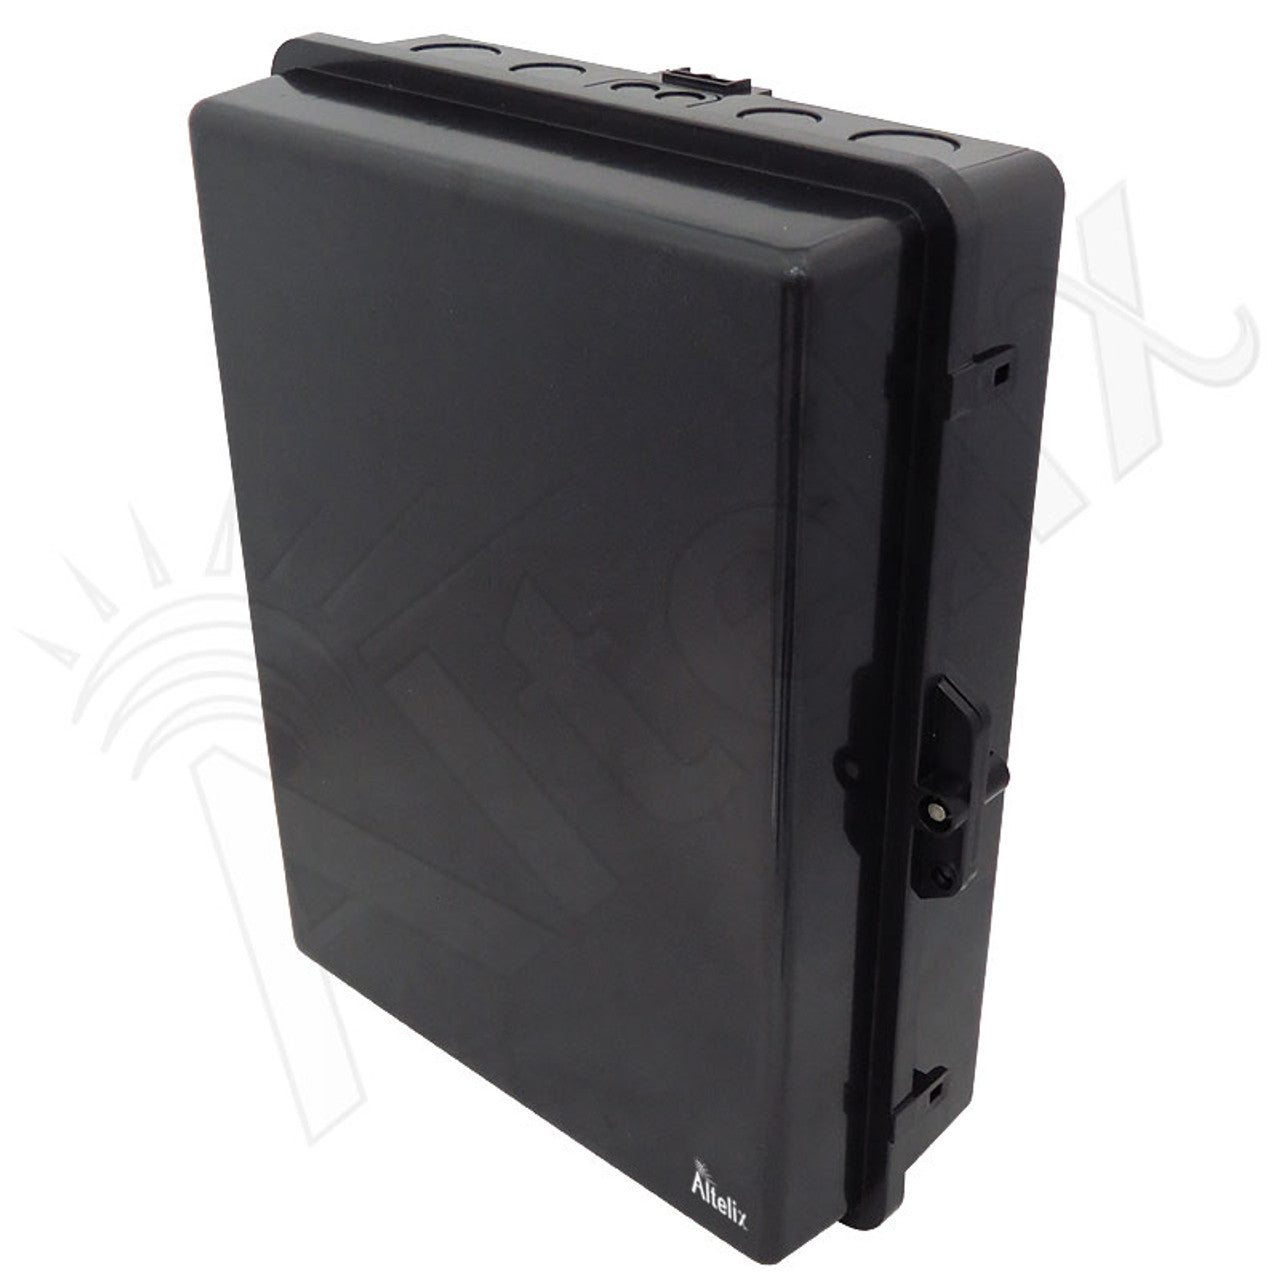 Buy black Altelix 17x14x6 PC + ABS Weatherproof DIN Rail NEMA Enclosure with Hinged Door